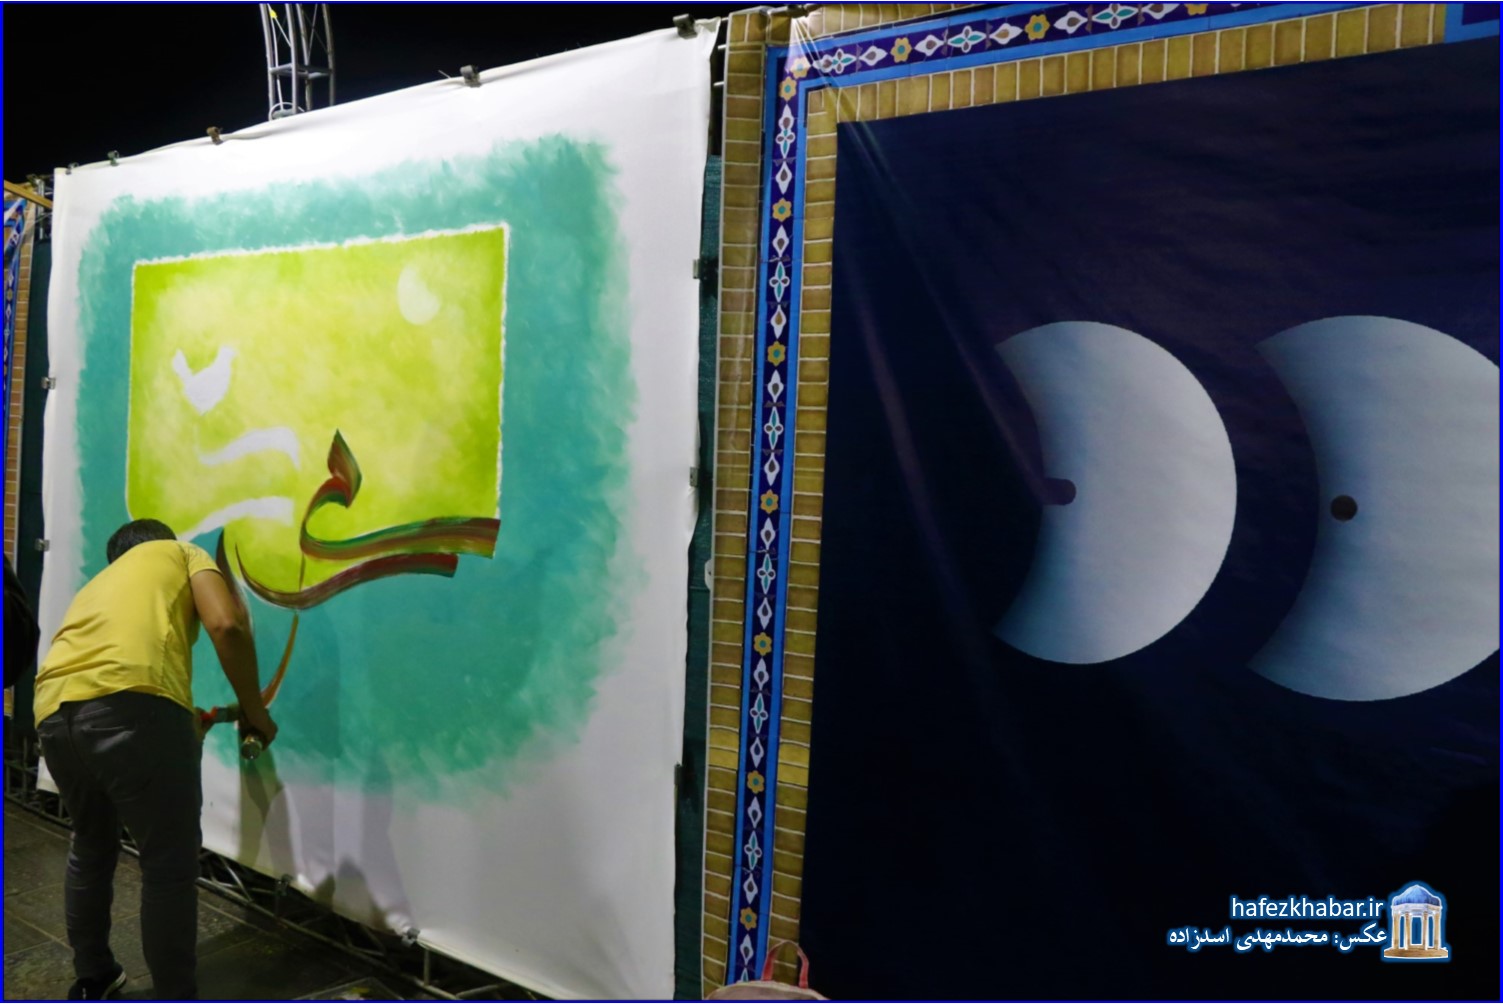 در پاسداشت هفته وحدت و هفته بزرگداشت حافظ؛ گشایش نمایشگاه هنرهای تجسمی آستان جانان/ عکس: محمدمهدی اسدزاده